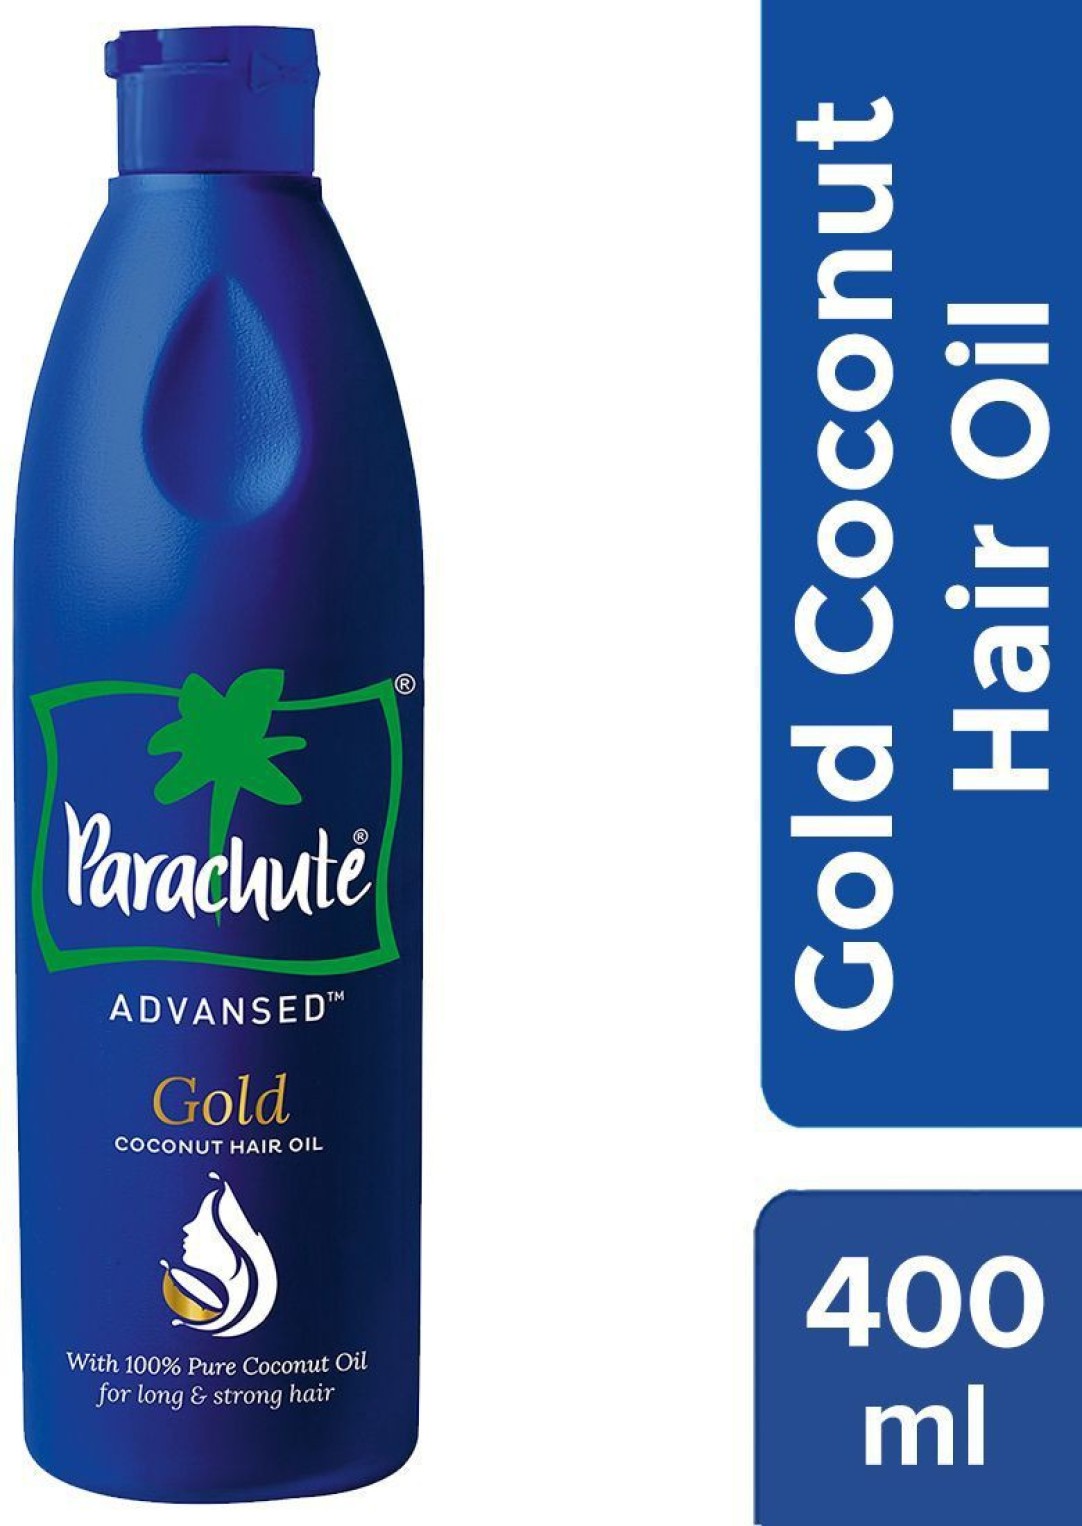 Parachute Advansed Gold Coconut Hair Oil (400ml)